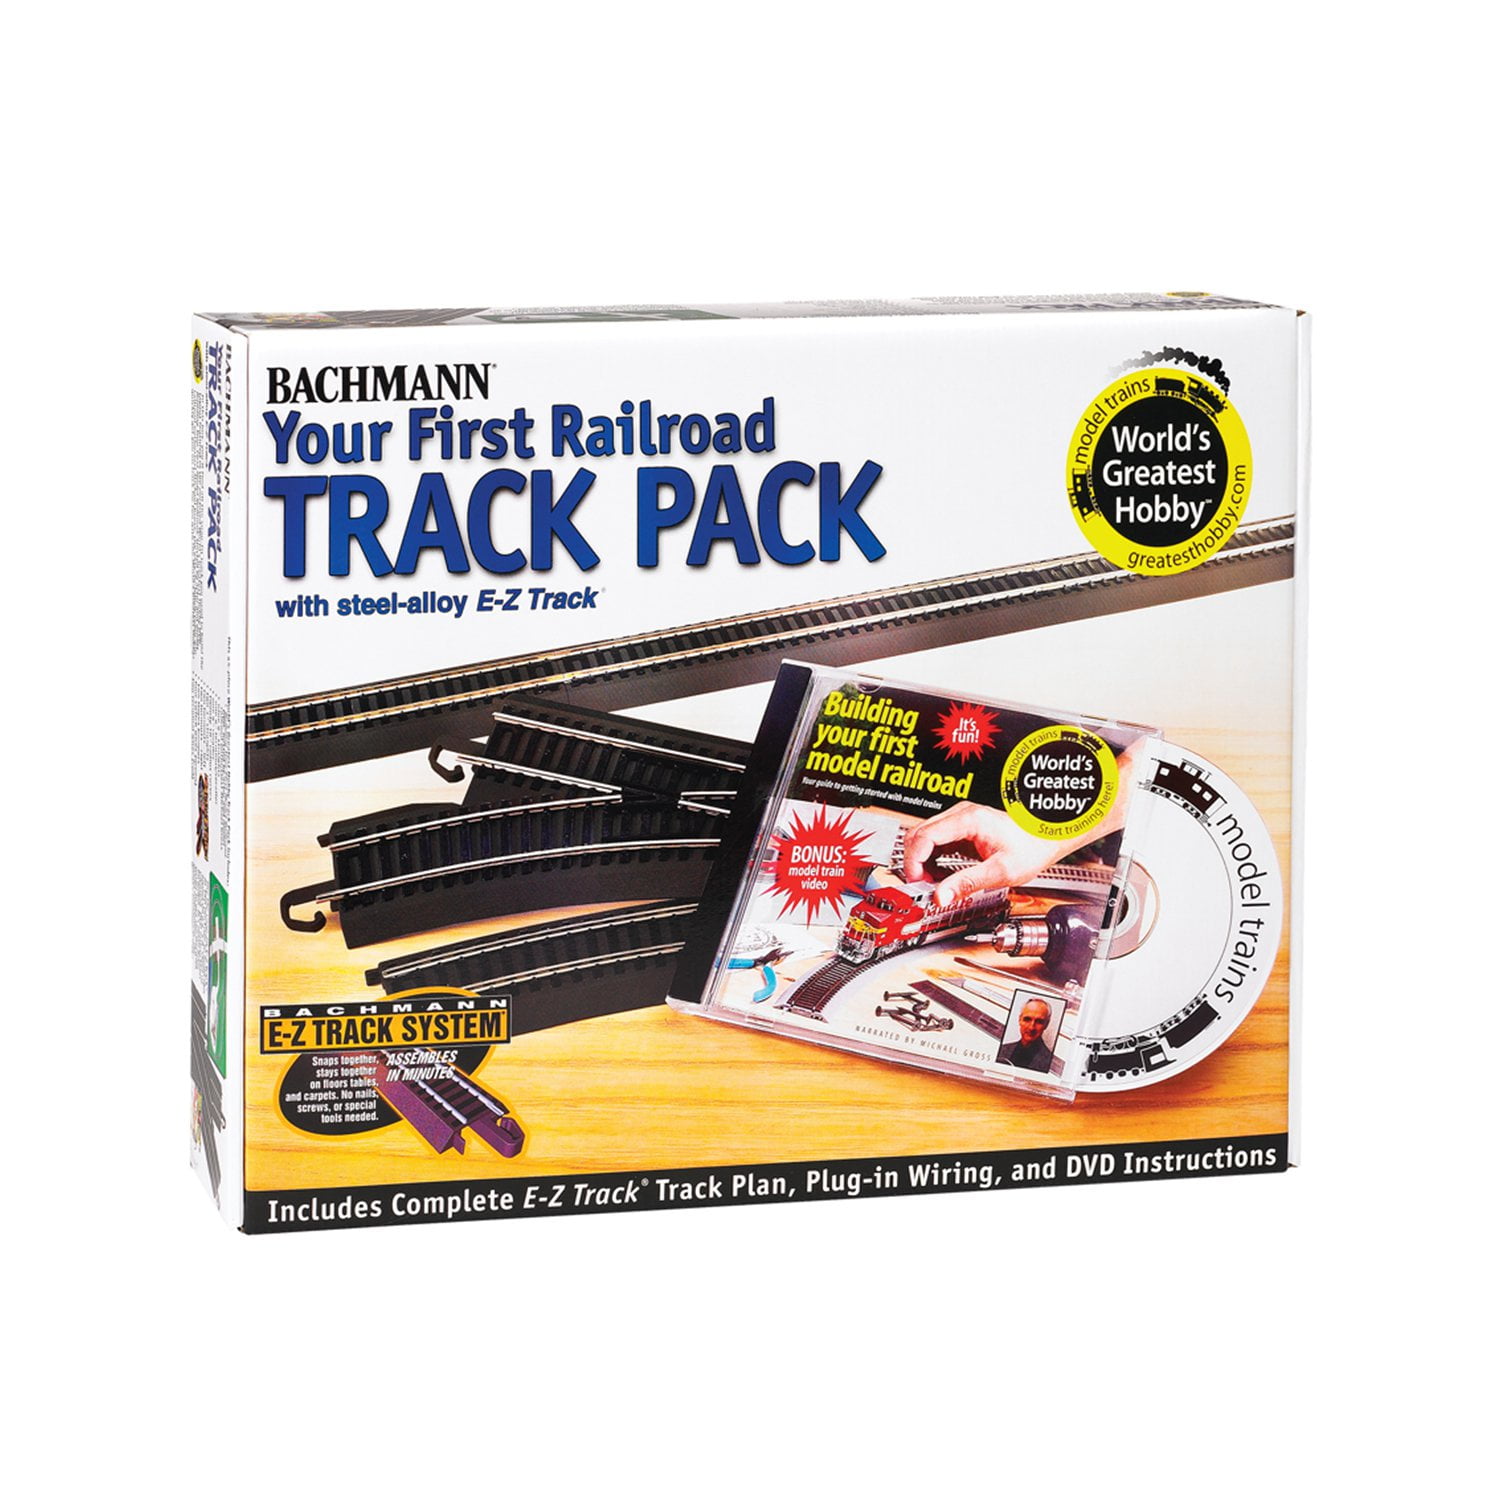 Hobby track. Hobby Tracker. Track pack